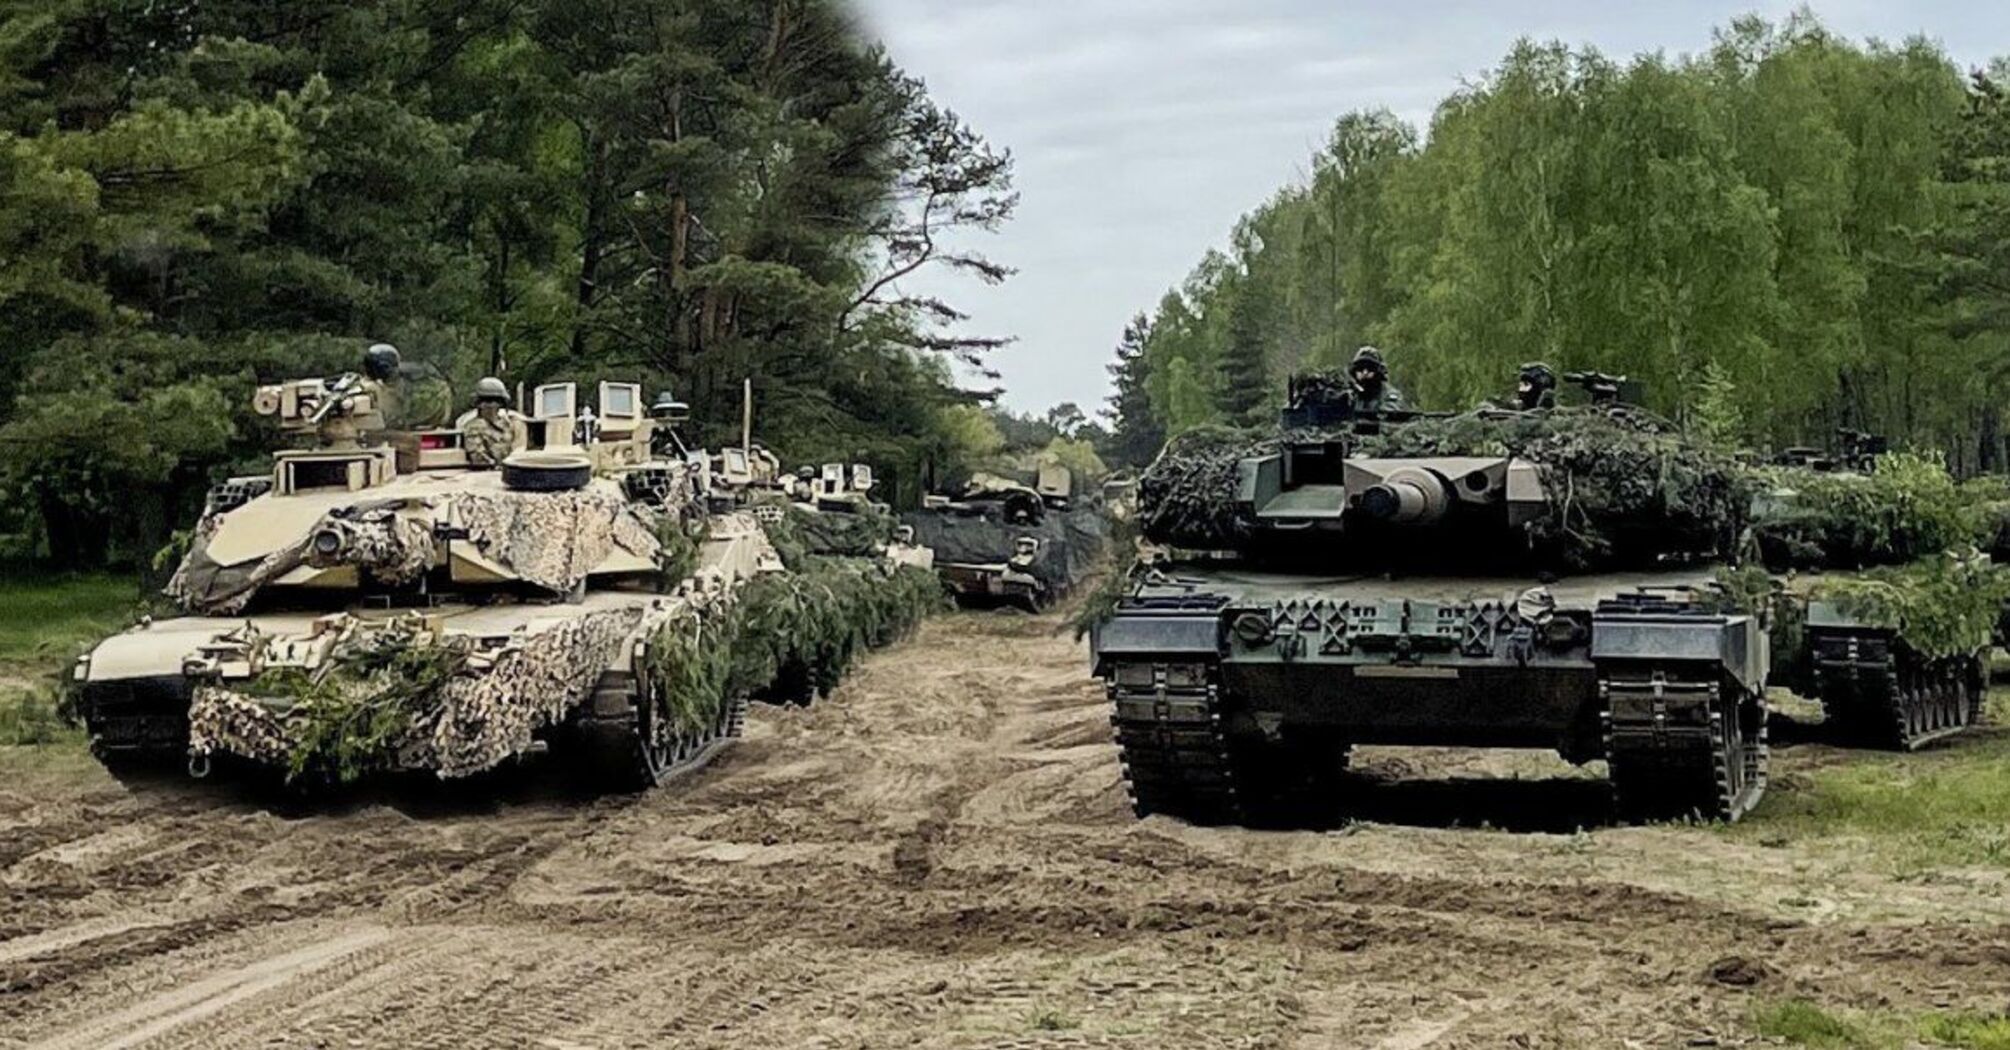 Германия официально передает Leopard 2 Украине: сколько танков может получить ВСУ от союзников